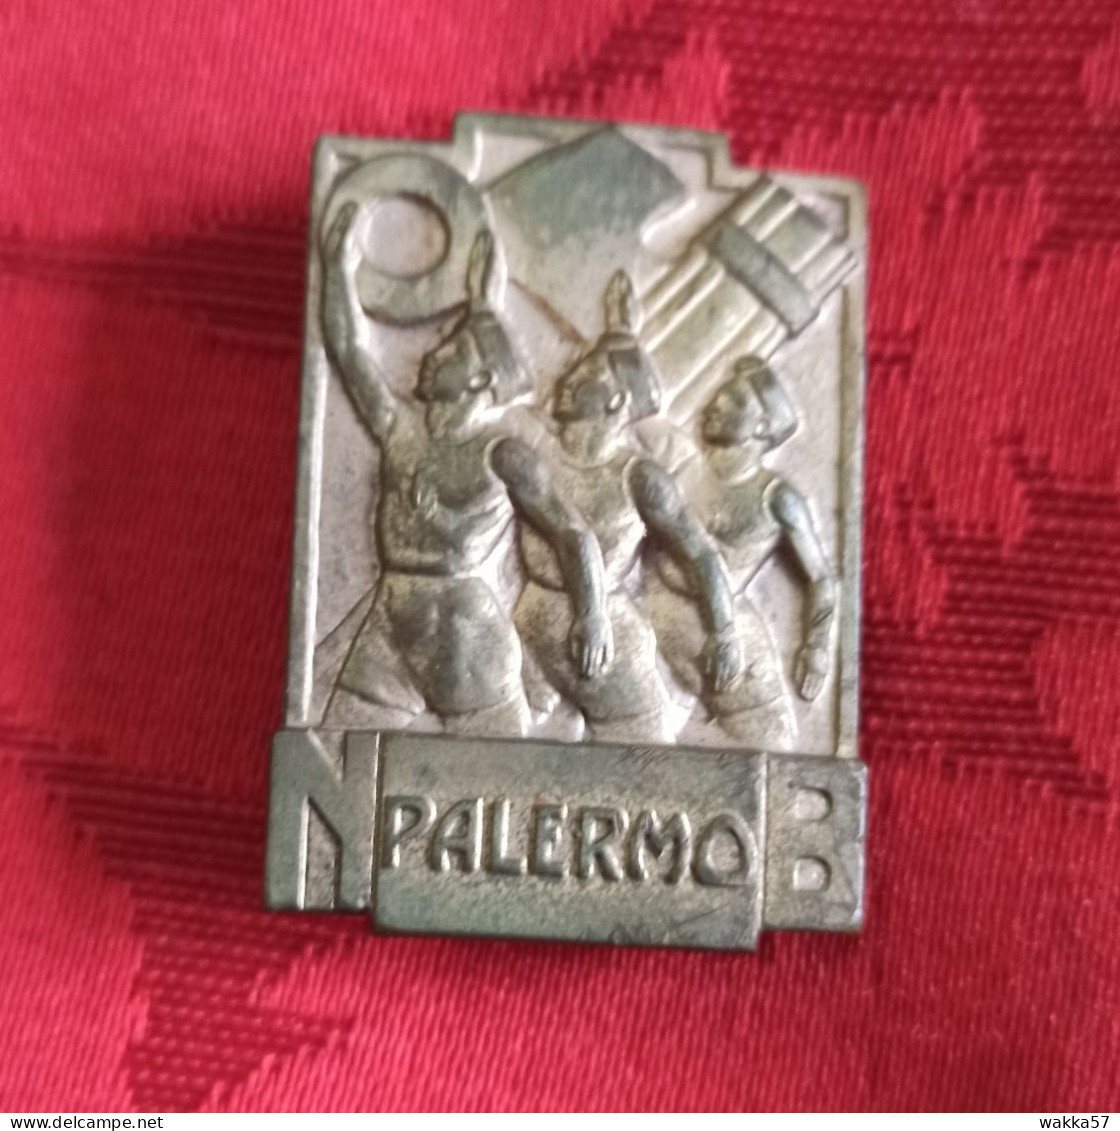 Distintivo Spilla ONB Palermo - Opera Nazionale Balilla - Mortillaro - Militari